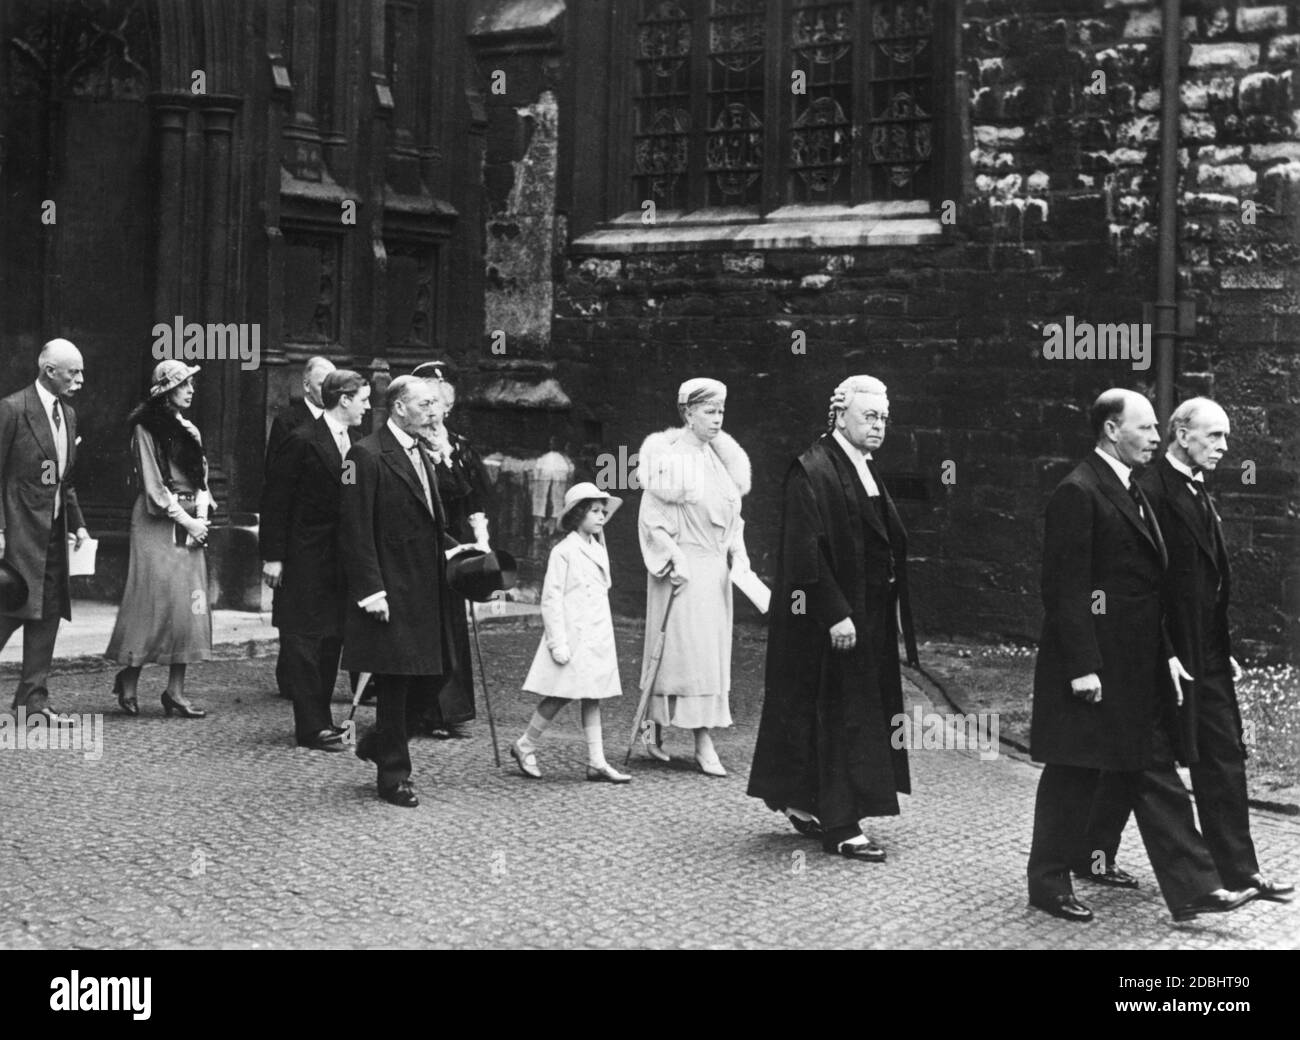 El rey Jorge V (cuarto desde la izquierda) deja la Abadía de Westminster con la reina María (quinto desde la izquierda) y la princesa Isabel (sexto desde la izquierda) después de un servicio de rogación para la población afectada por el desempleo. (foto sin fecha) Foto de stock